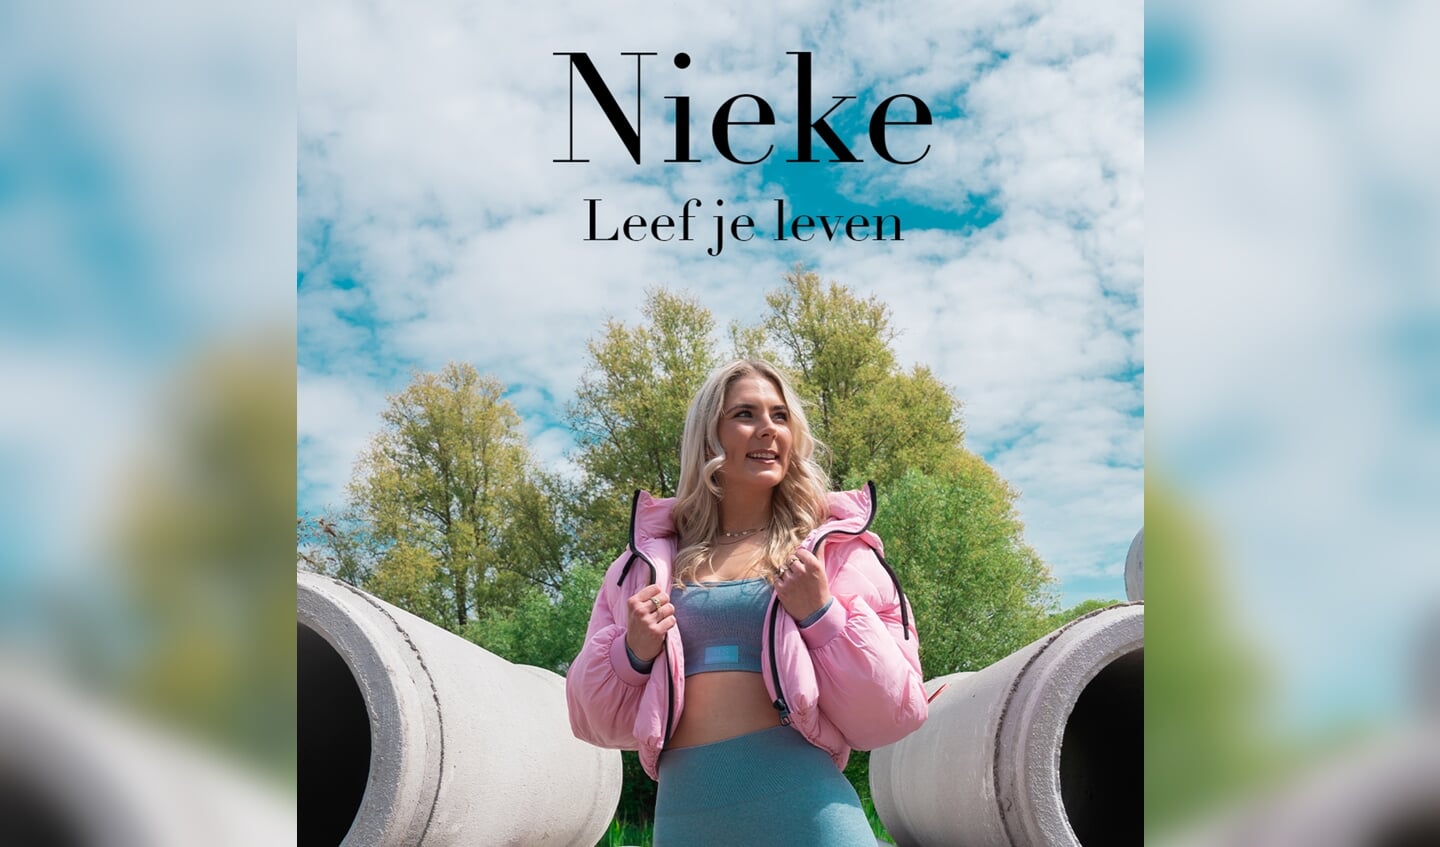 Vlaardingse Nieke brengt tweede single uit.